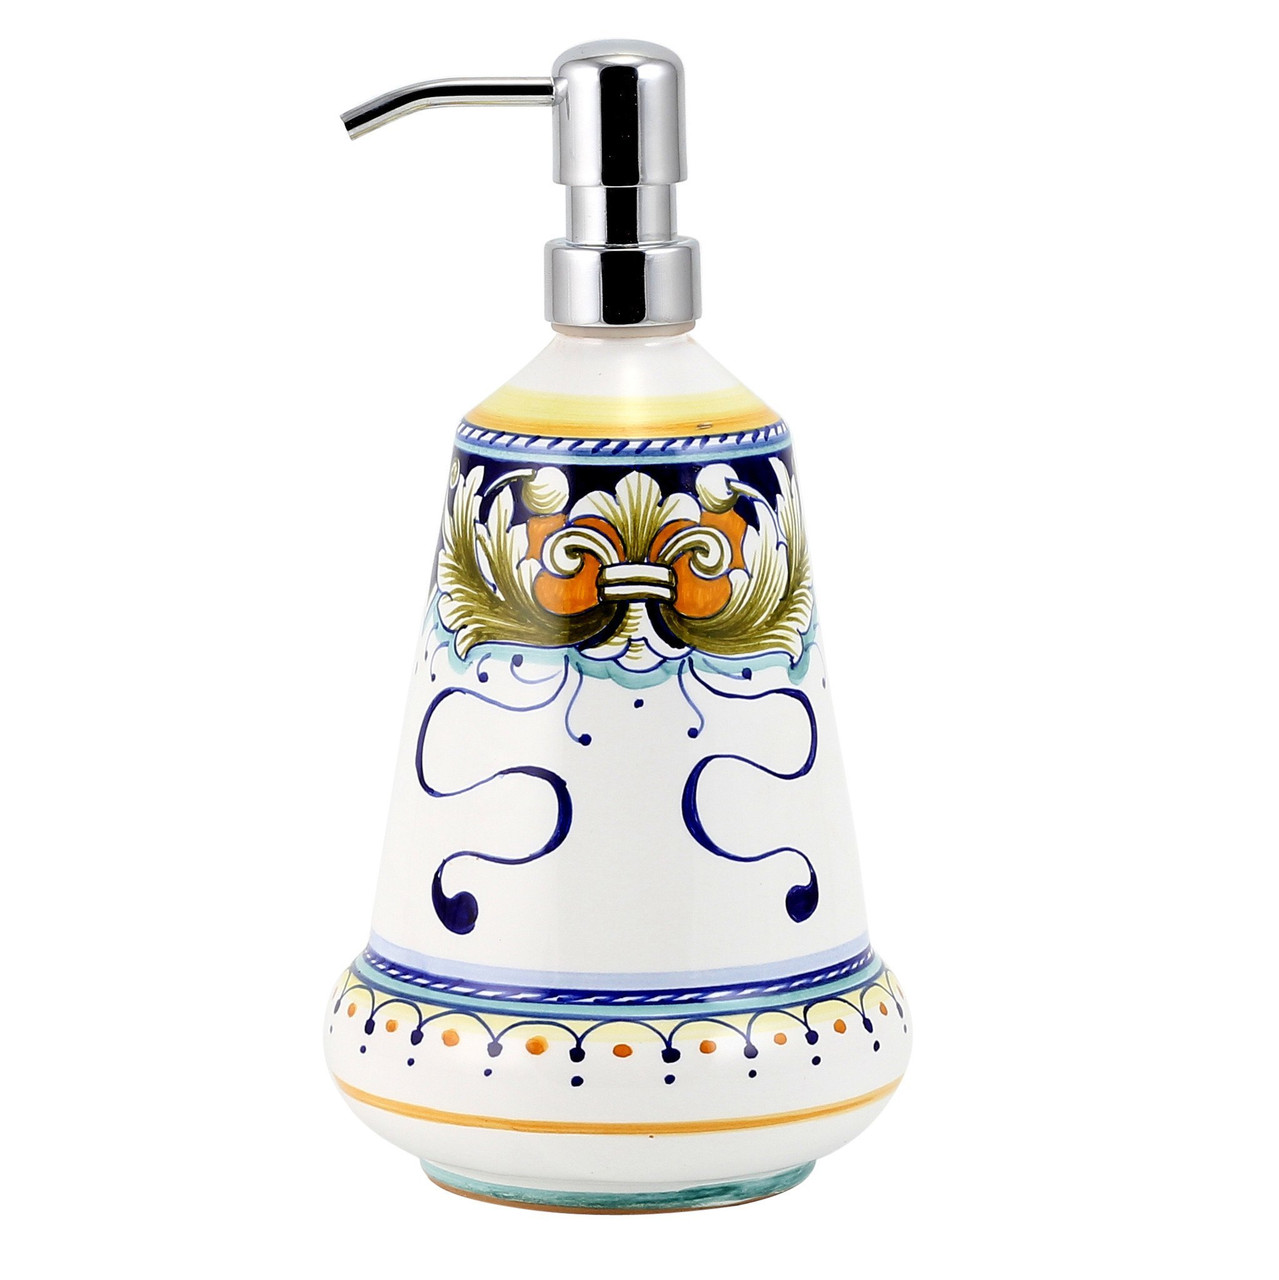 Italian Ceramic Deruta Foglie - Liquid Soap Dispenser